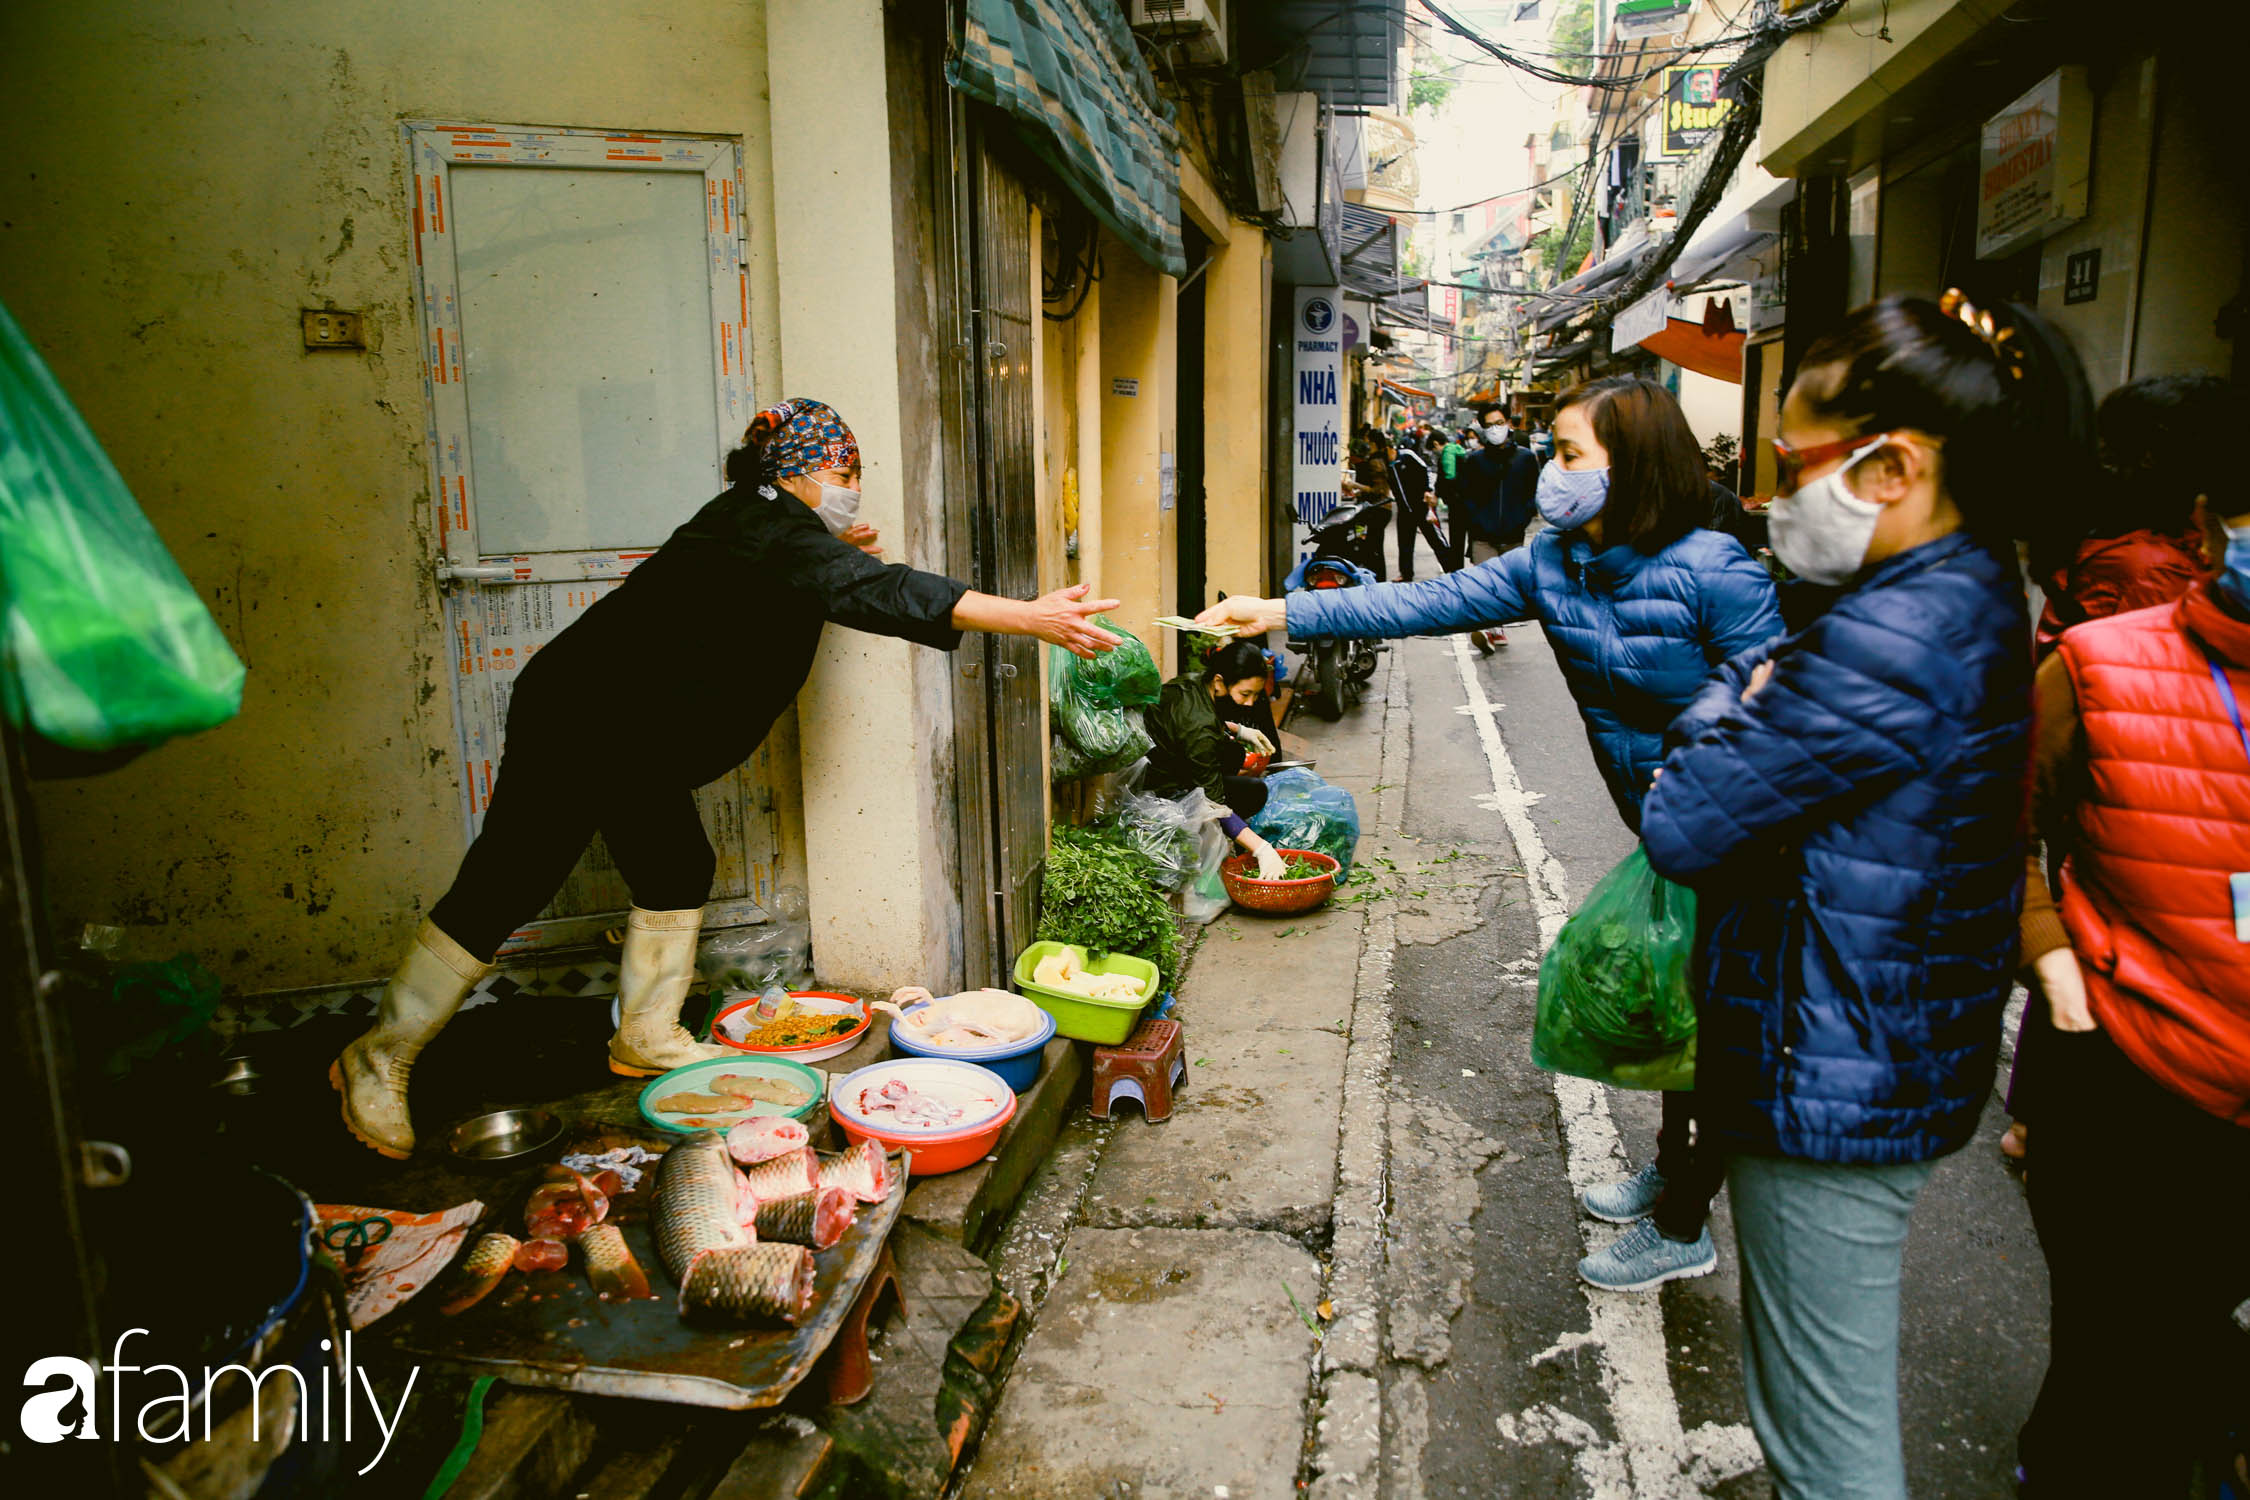 Khu chợ trong phố cổ Hà Nội kẻ vạch giãn cách 2 mét, chỉ bán hàng cho những người chịu đo thân nhiệt, đeo khẩu trang - Ảnh 4.